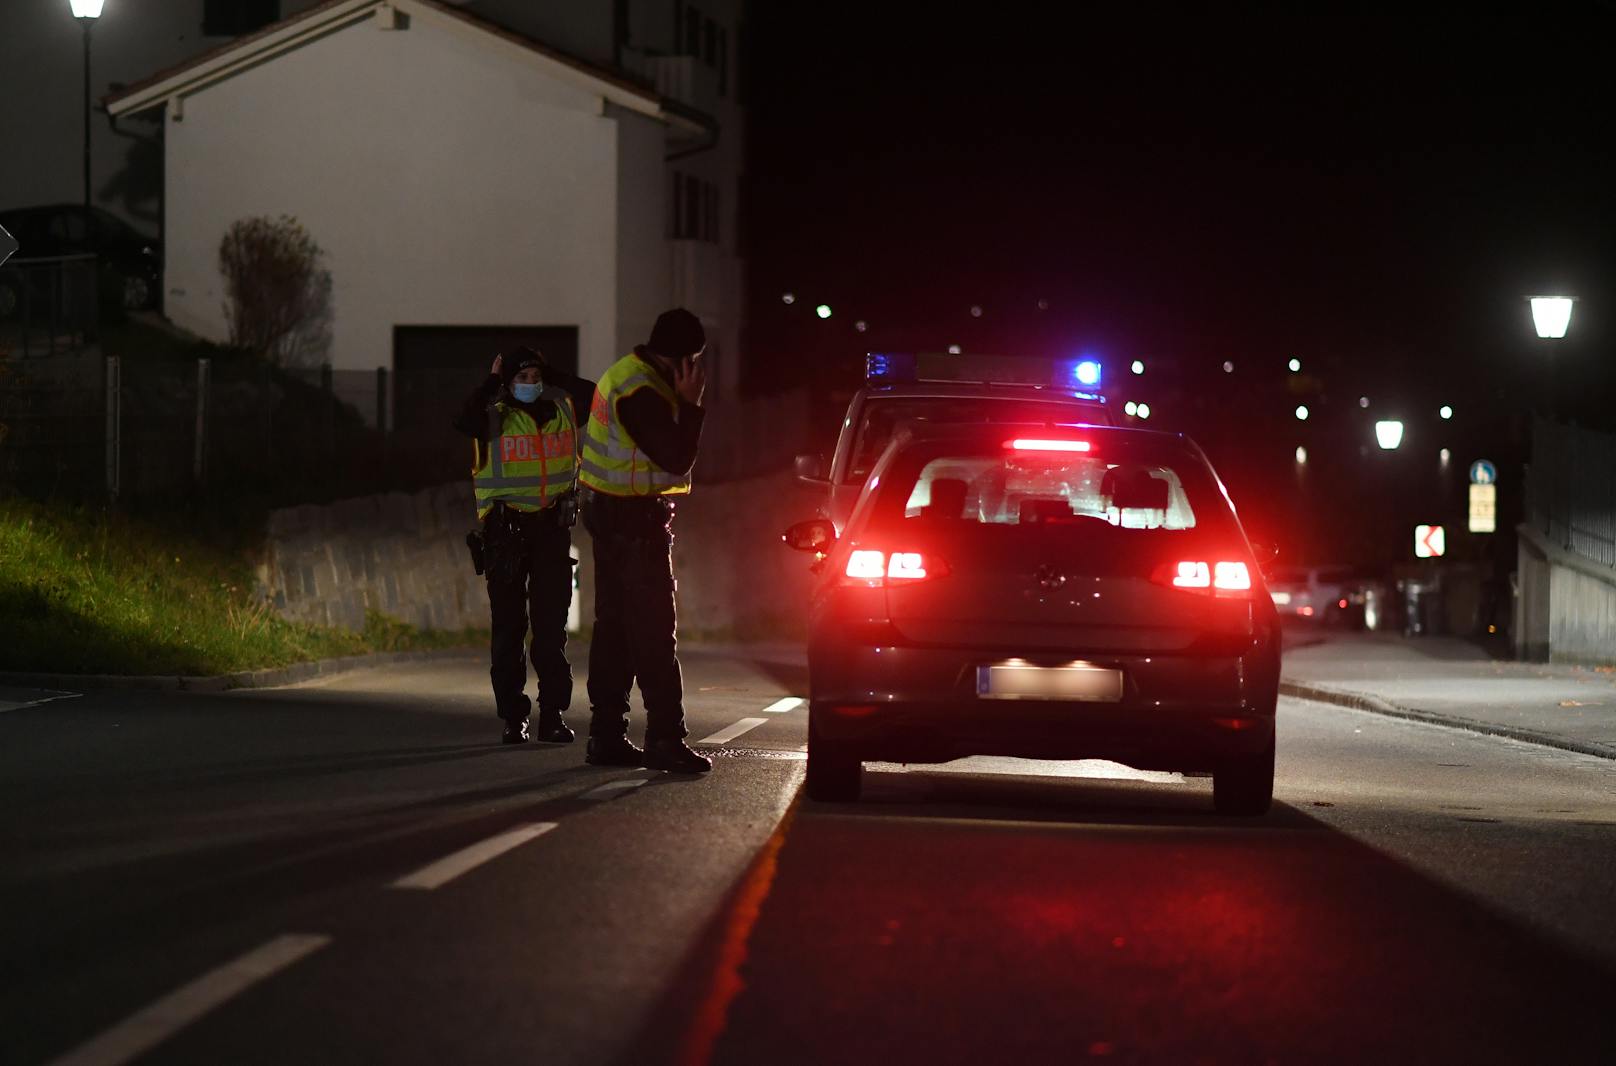 Familiendrama am Tegernsee in Bayern! Ein Mann soll seine Frau als Geisel genommen und erstochen haben. Die Polizei erschoss den Täter.